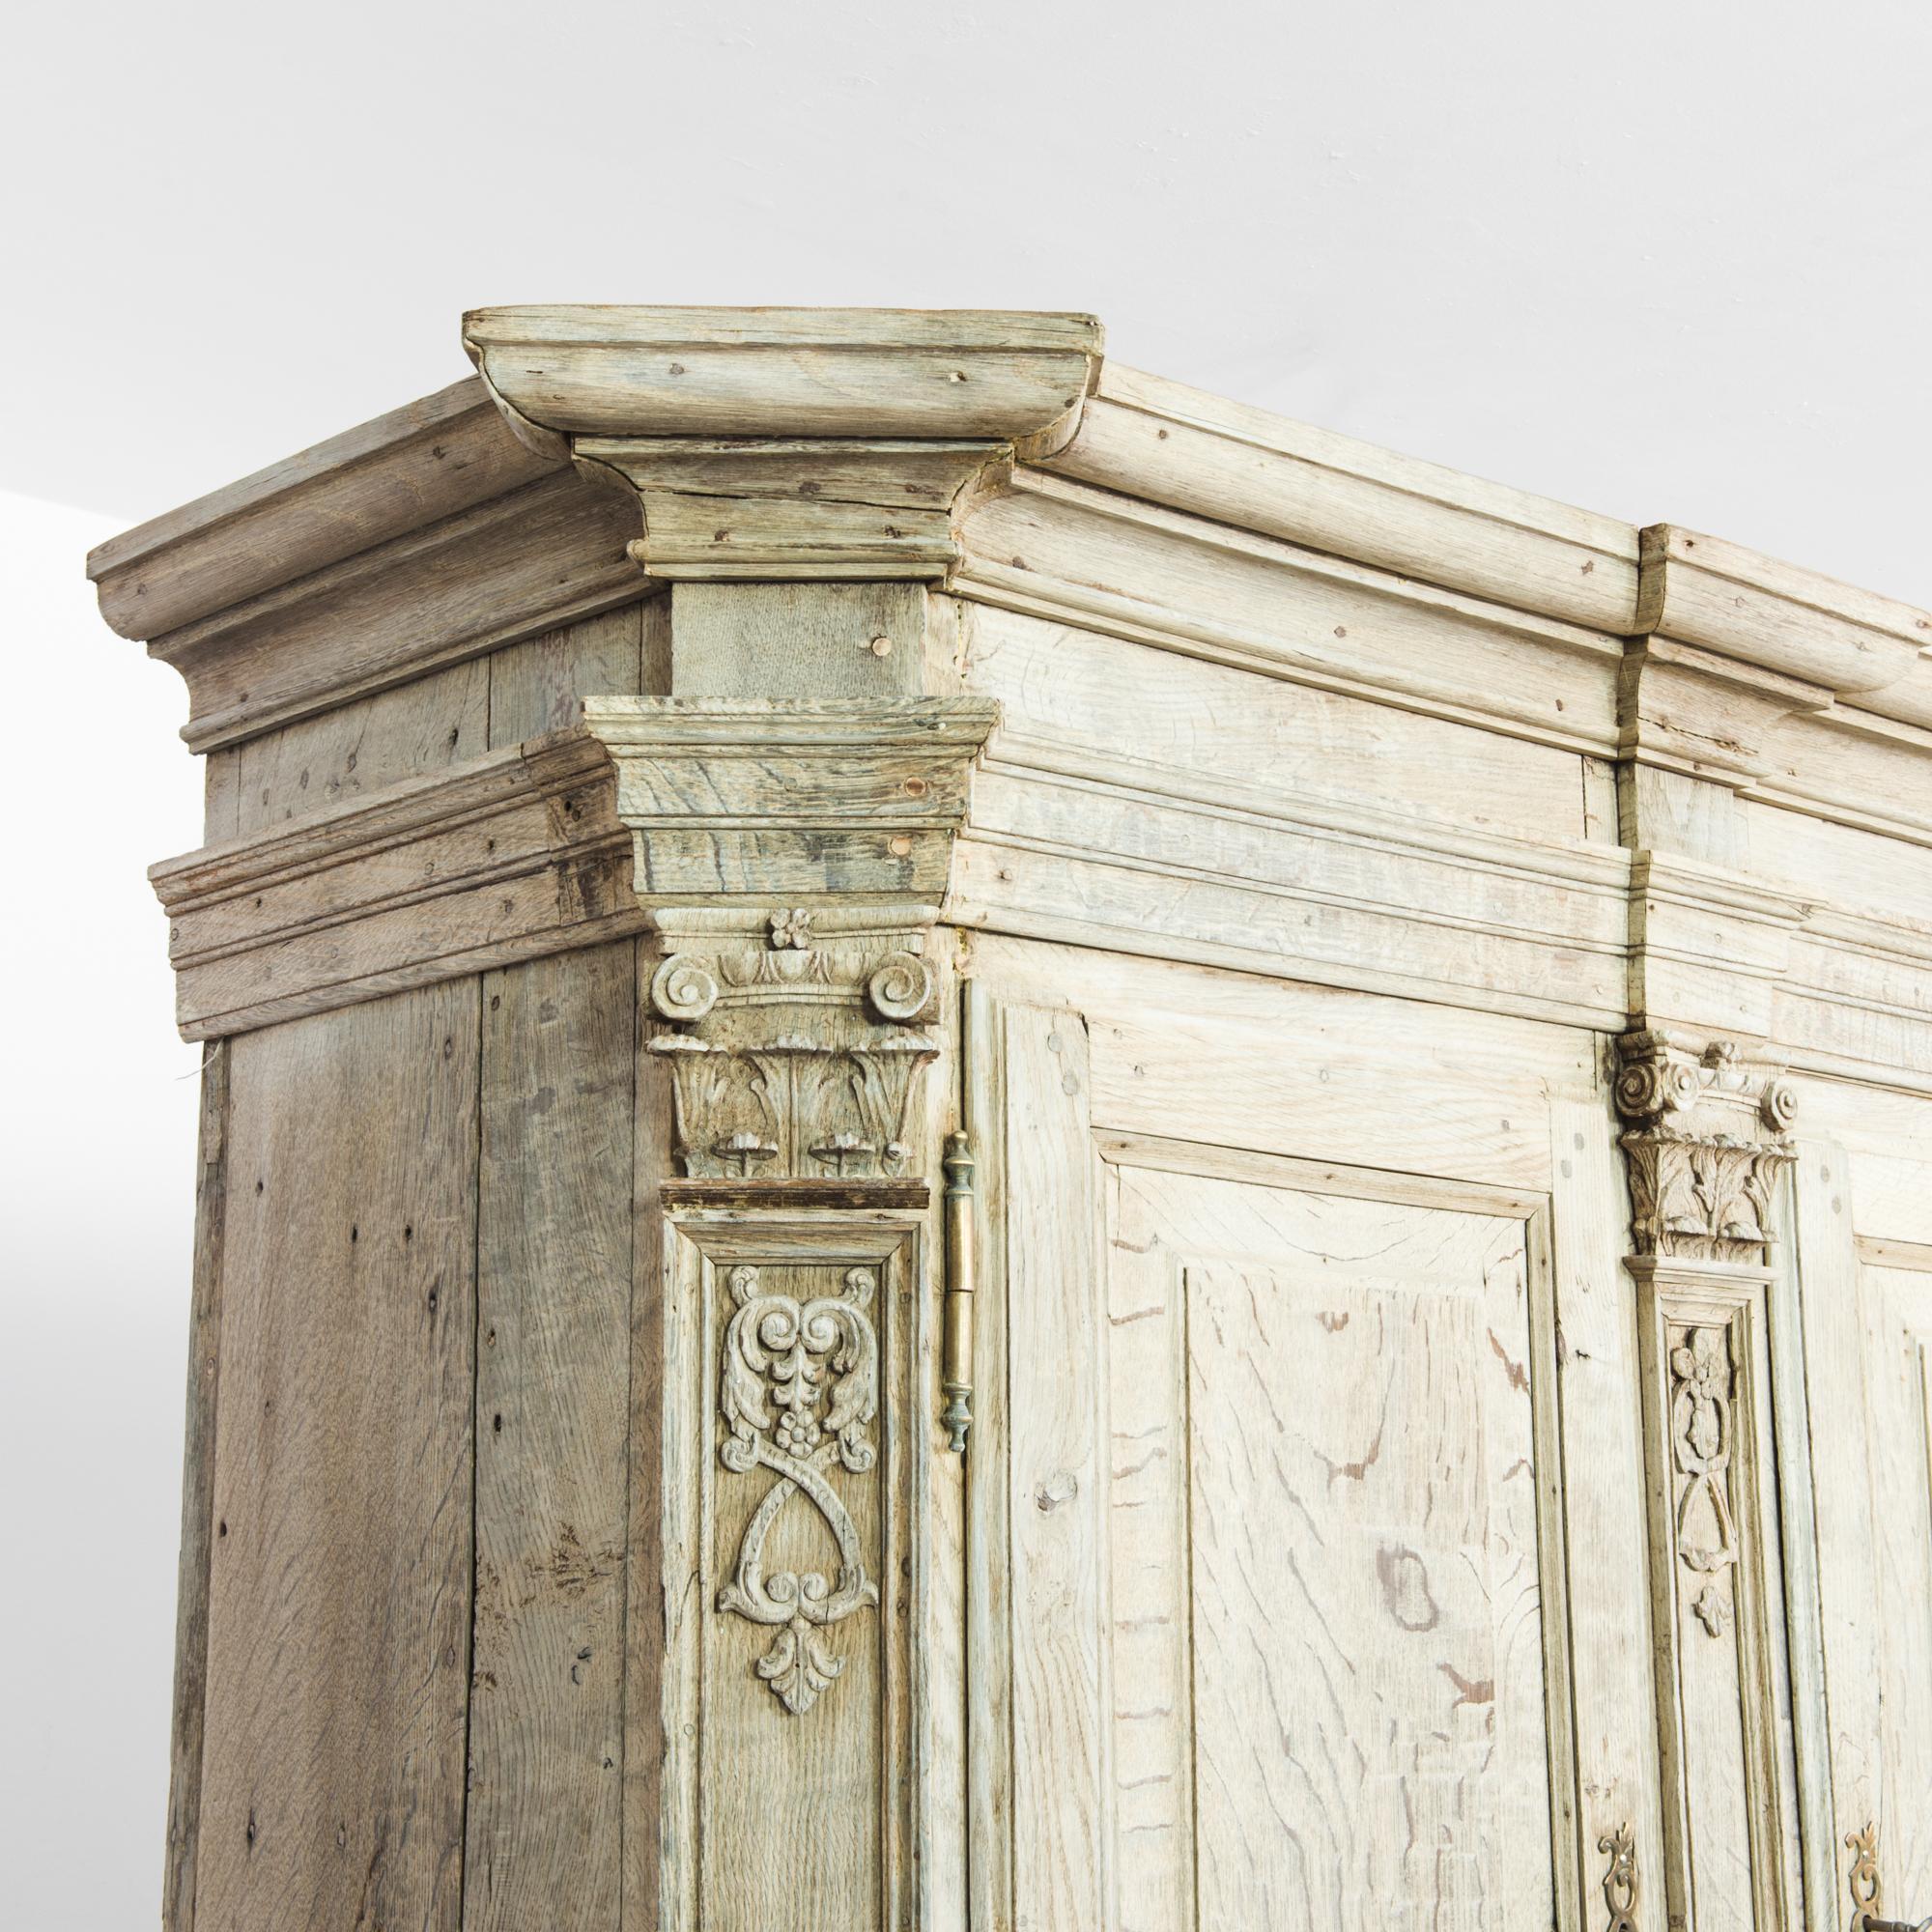 Ein Schrank aus gebleichter Eiche aus Belgien, hergestellt um 1780. Dieser Schrank aus dem 18. Jahrhundert ist in ausgezeichnetem Zustand und ein außergewöhnlicher Fund. Fast so breit wie hoch, verfügt dieses Möbelstück über zwei Ebenen mit